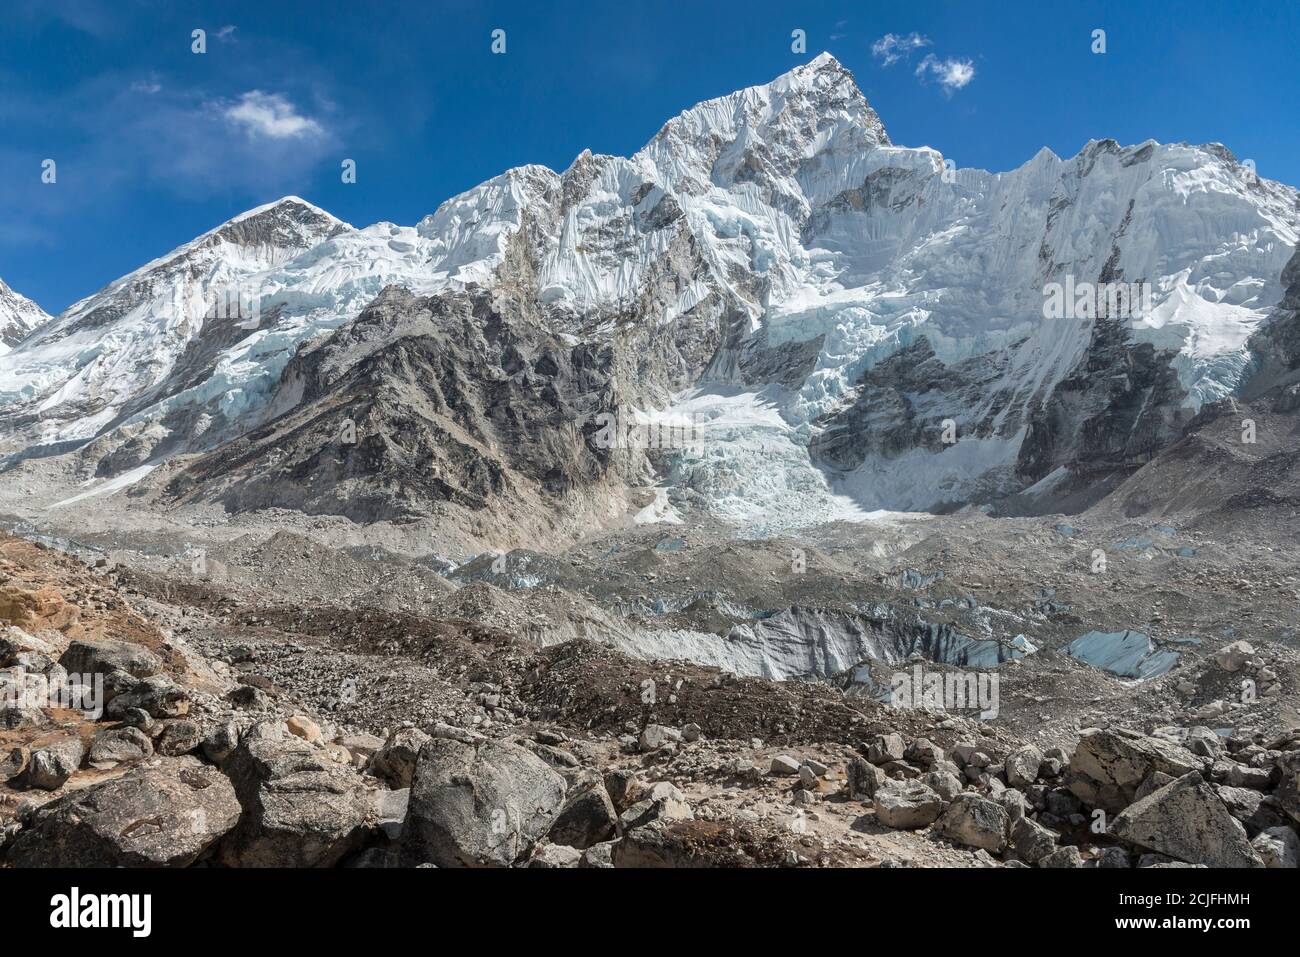 Looking up at Nuptse over the massive Khumbu glacier. Stock Photo